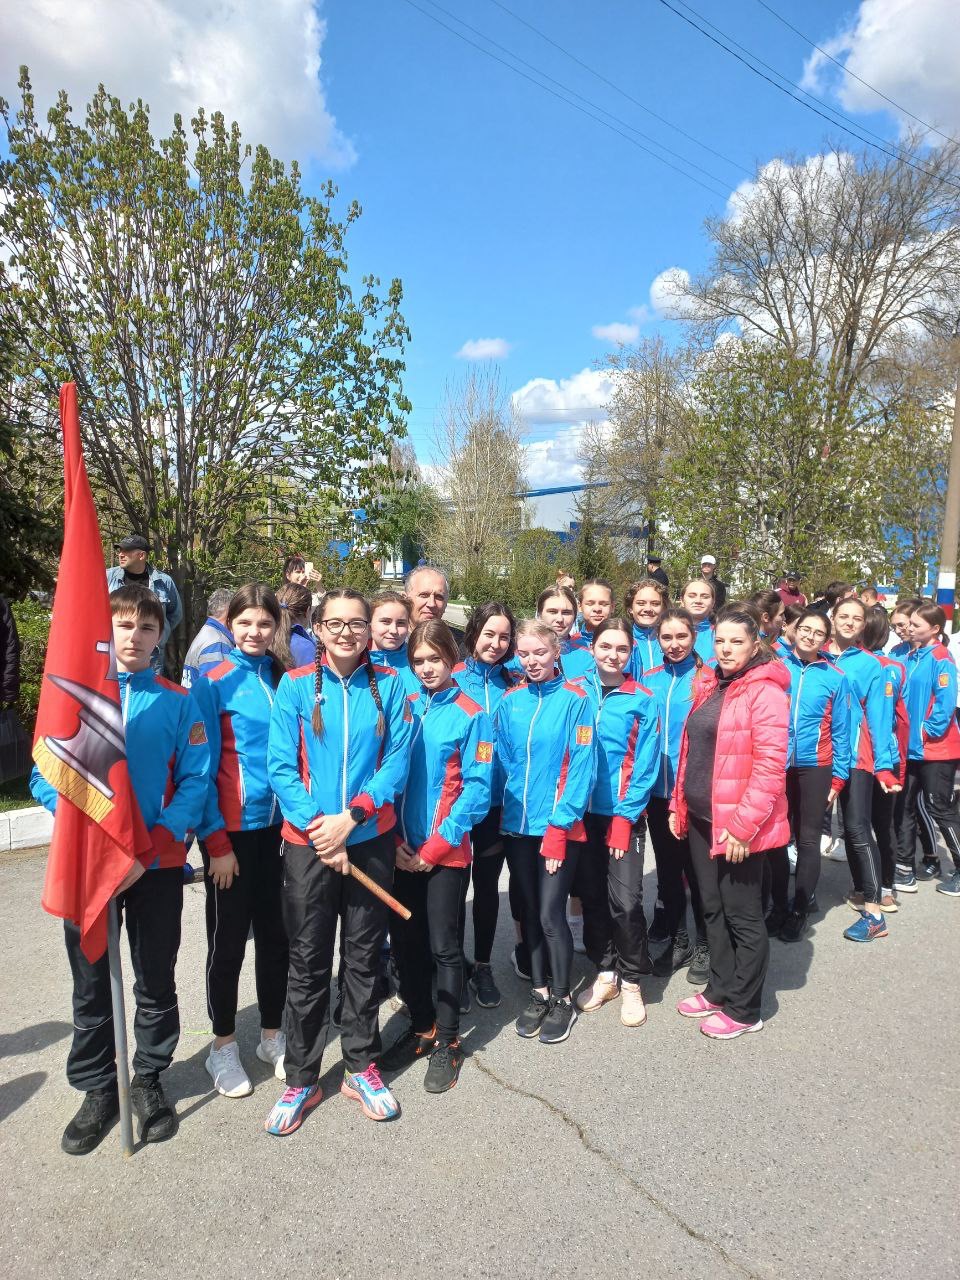 Кузнечане приняли участие в легкоатлетической  эстафете на призы губернатора Пензенской области